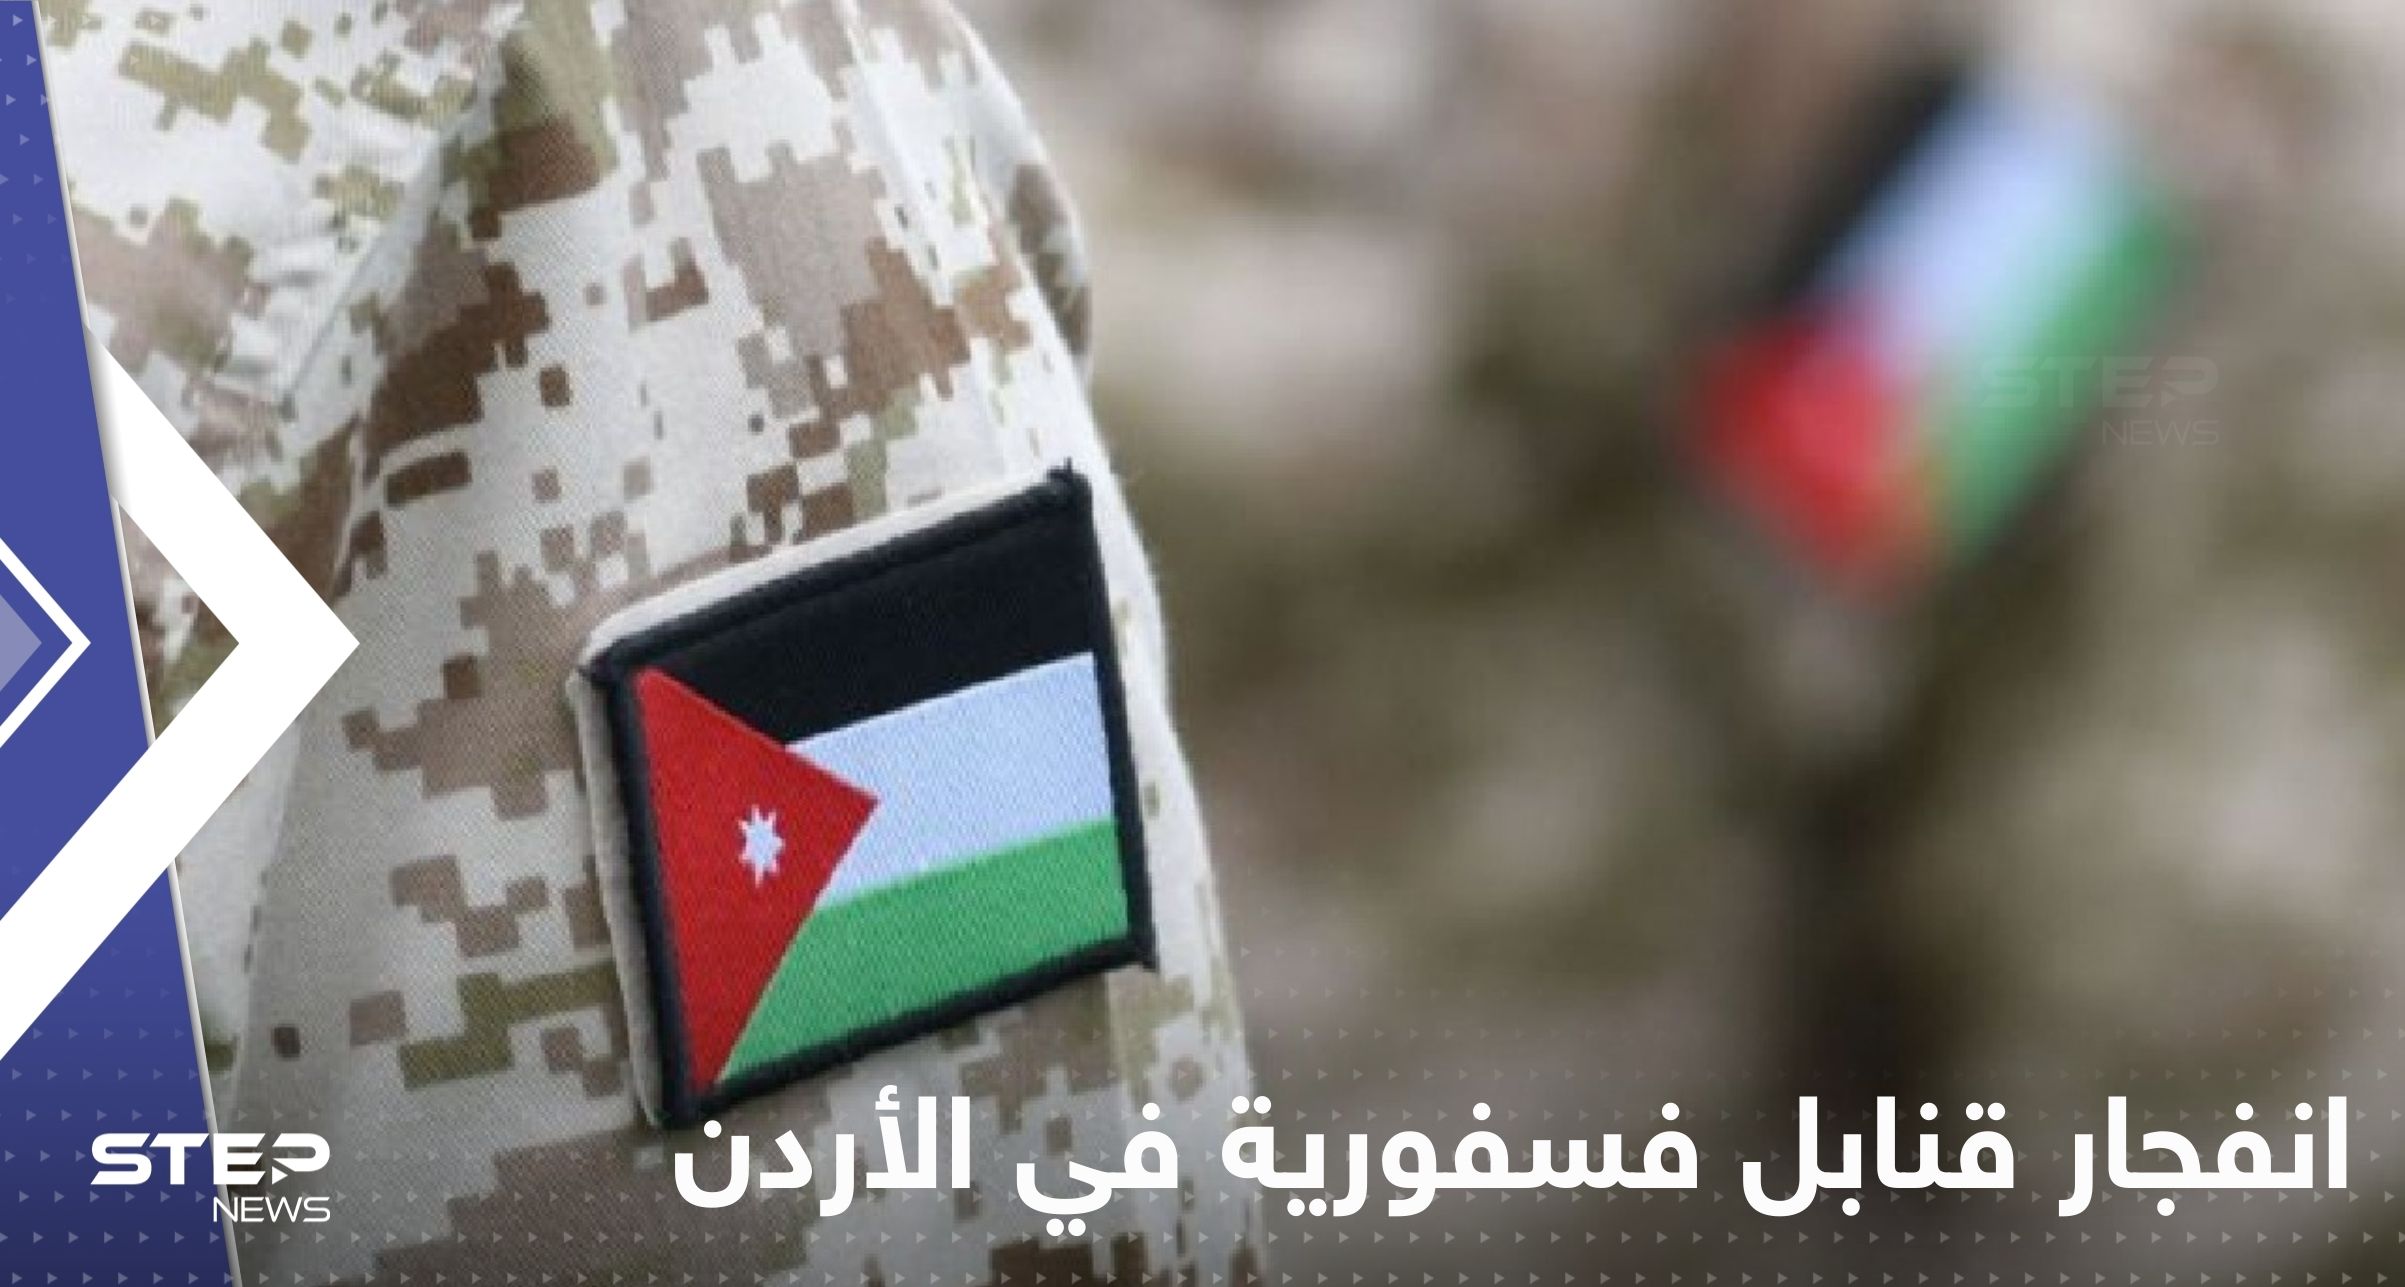 انفجار قنابل فسفورية في الأردن وإصابة عدد من أفراد الجيش والإعلام يكشف التفاصيل